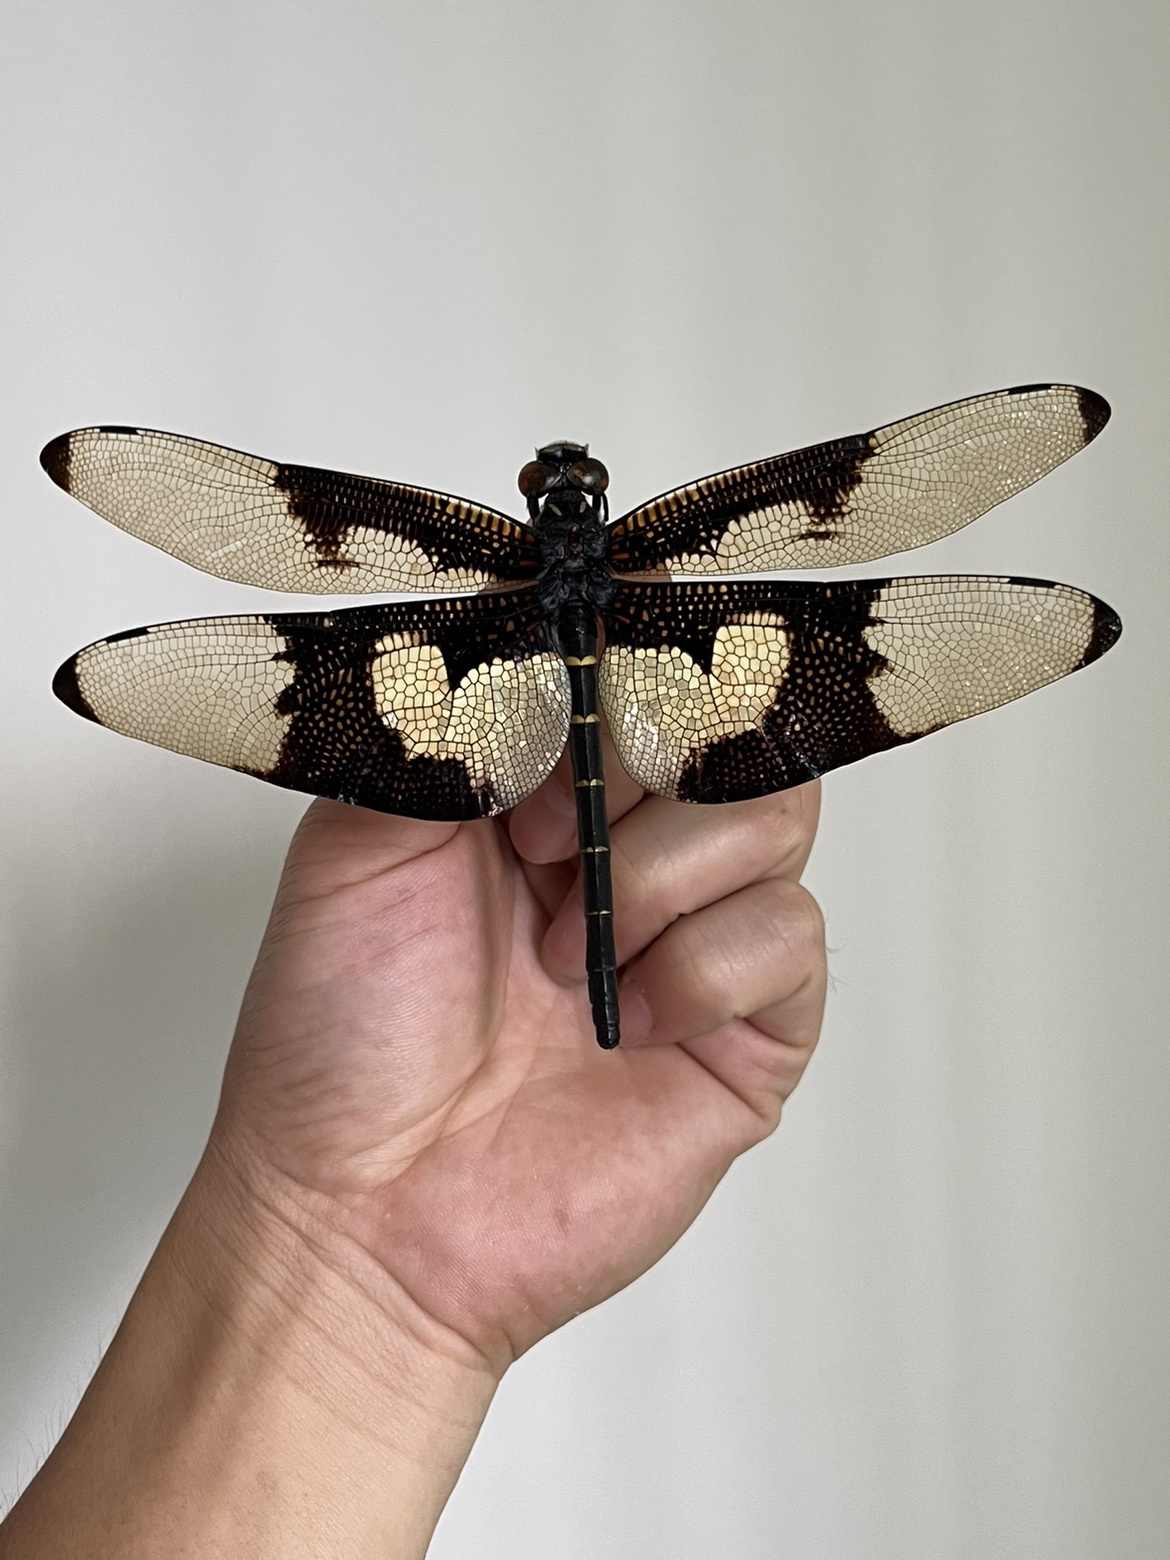 蝴蝶裂唇蜓世界翅面最大的蜻蜓A1/-雄未展翅原蜓生物教学标本展览